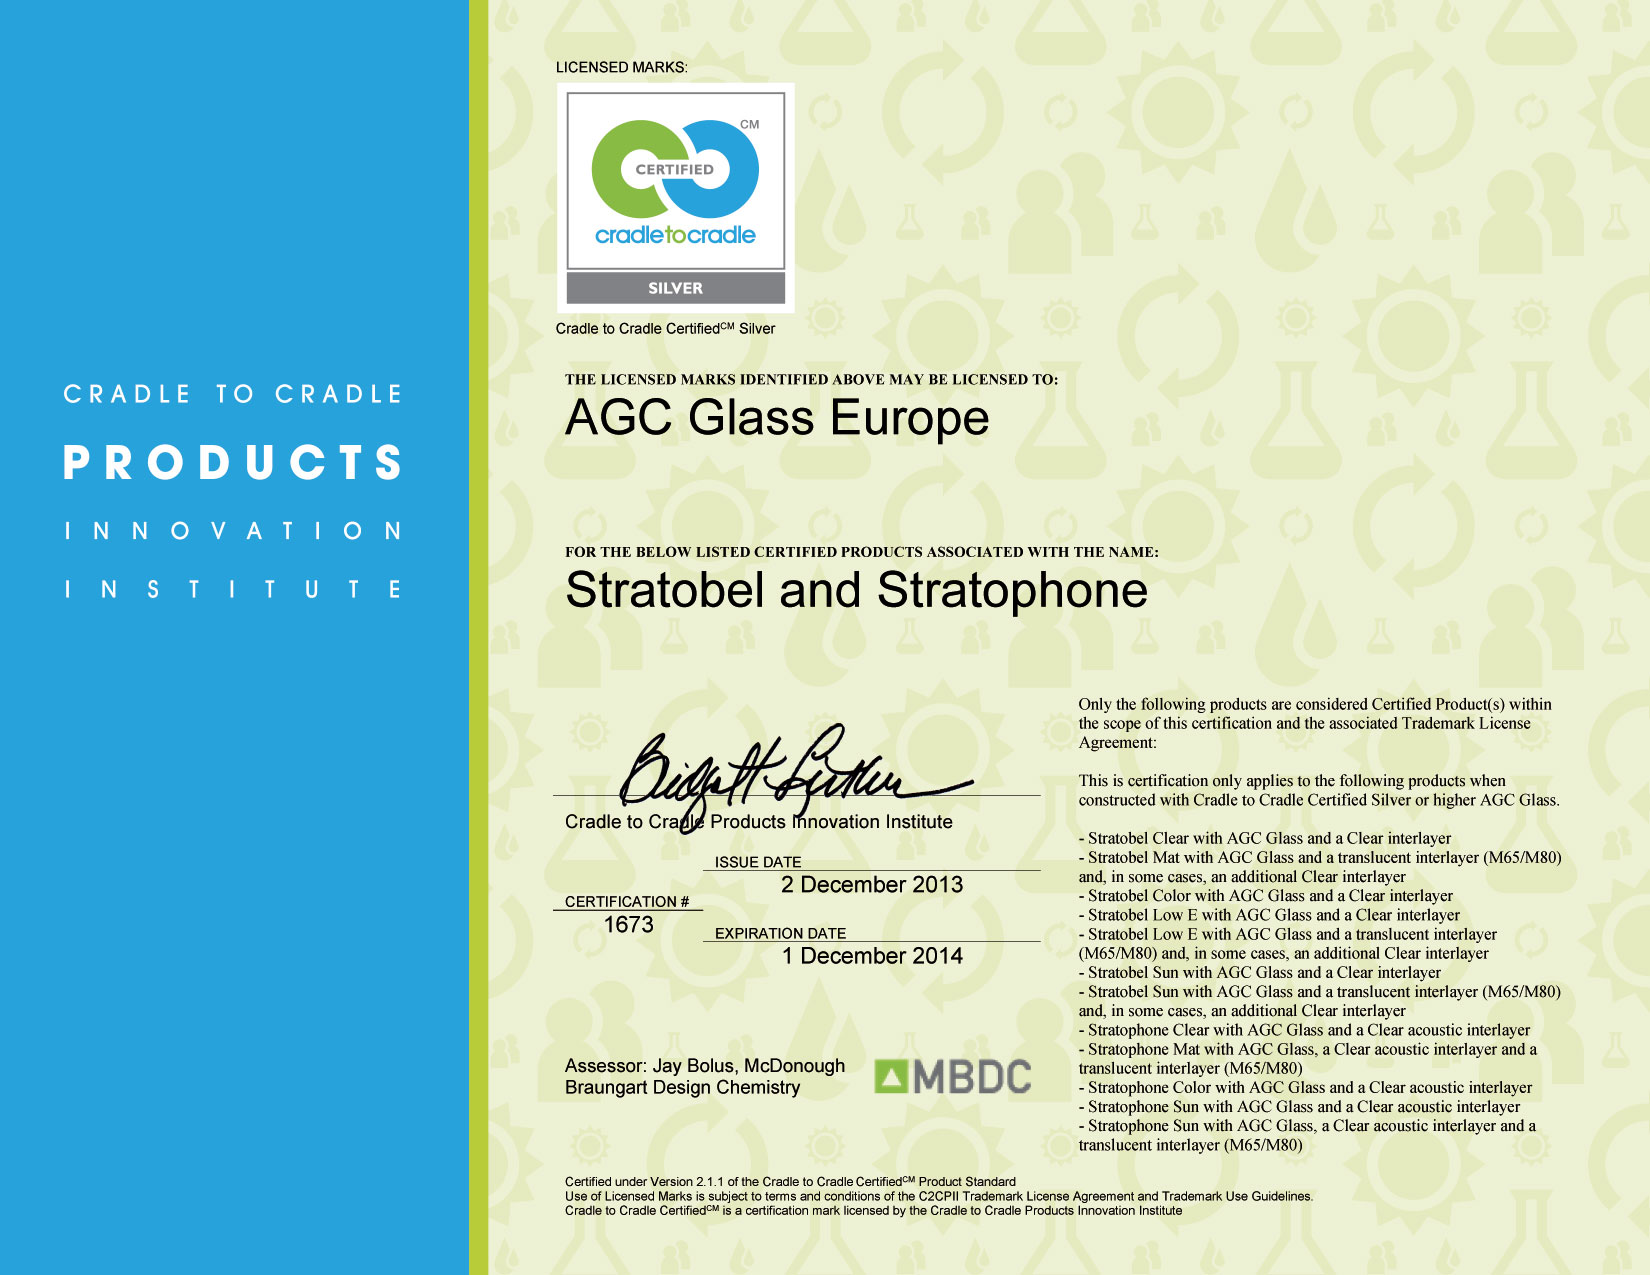 Certifikát cradle to cradle certifiedcm silver - C2C_Certificate_Stratobel_S